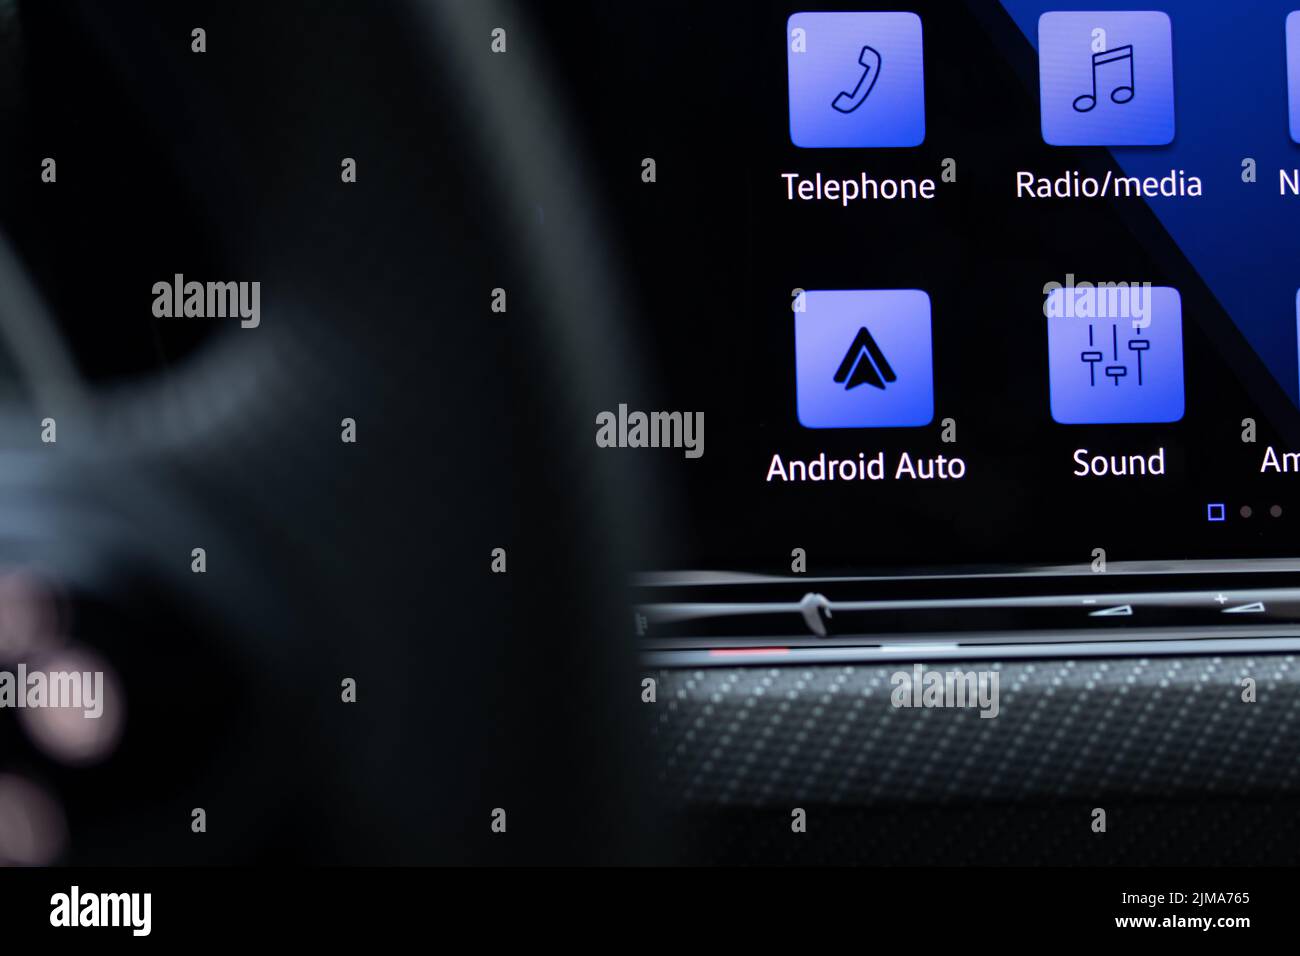 L'icône Google Android Auto est visible en bleu sur l'écran d'une nouvelle voiture de luxe. Banque D'Images